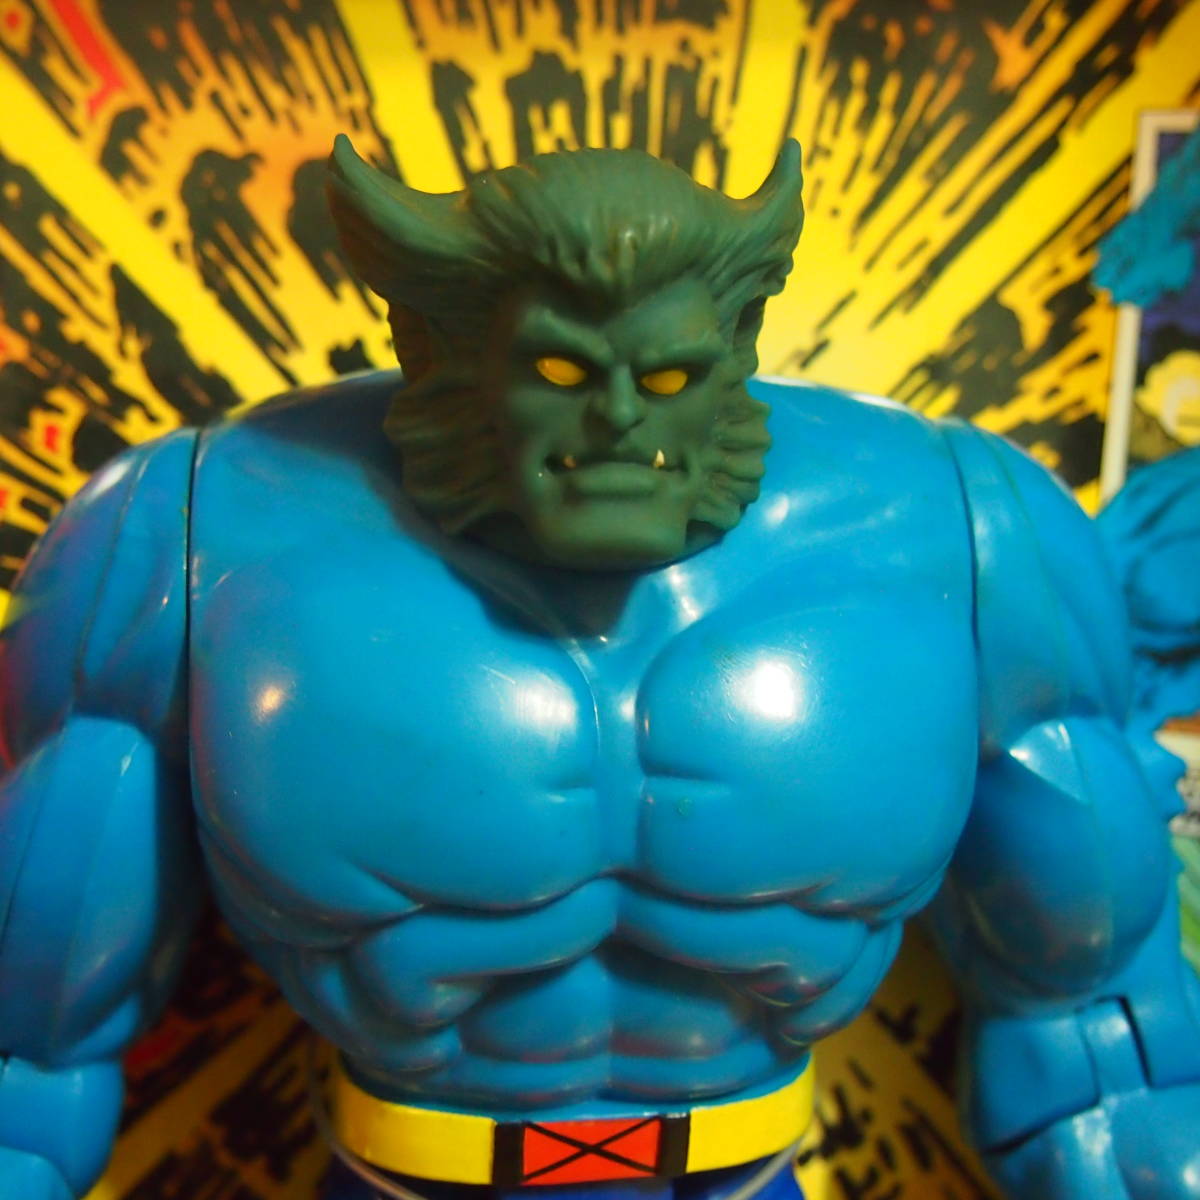 TOYBIZ X-Men Deluxe 10-Inch Action Figures BEAST Deluxe 10 дюймовый action фигурка Be -тактный 